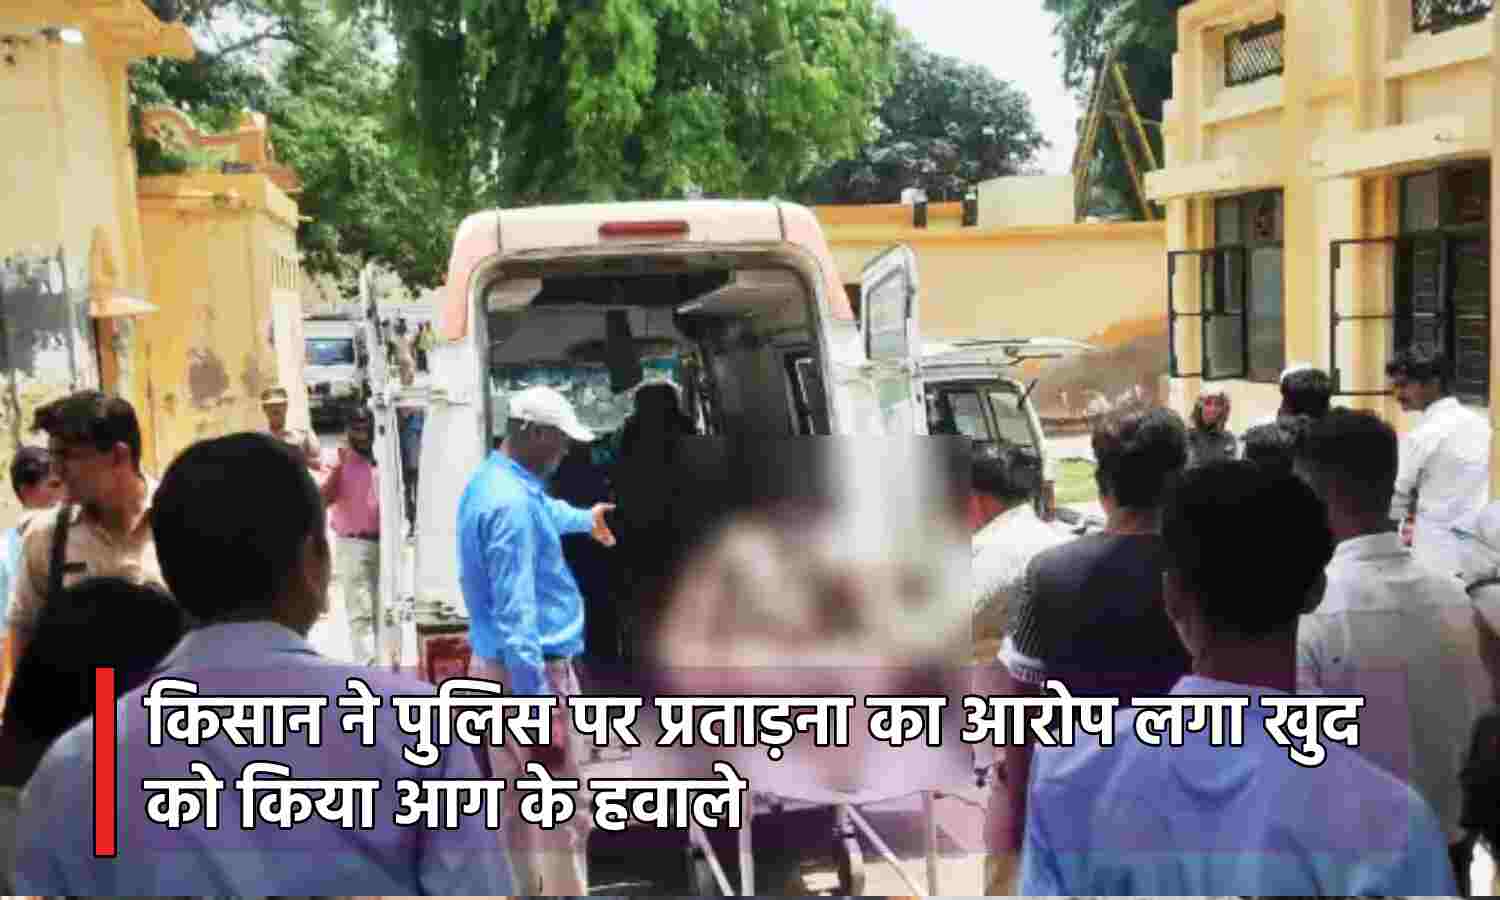 Uttar Pradesh News : पत्नी और बच्चों के साथ SSP ऑफिस पहुंचे किसान ने खुद को लगाई आग, हालत गंभीर, पुलिस पर प्रताड़ना का आरोप